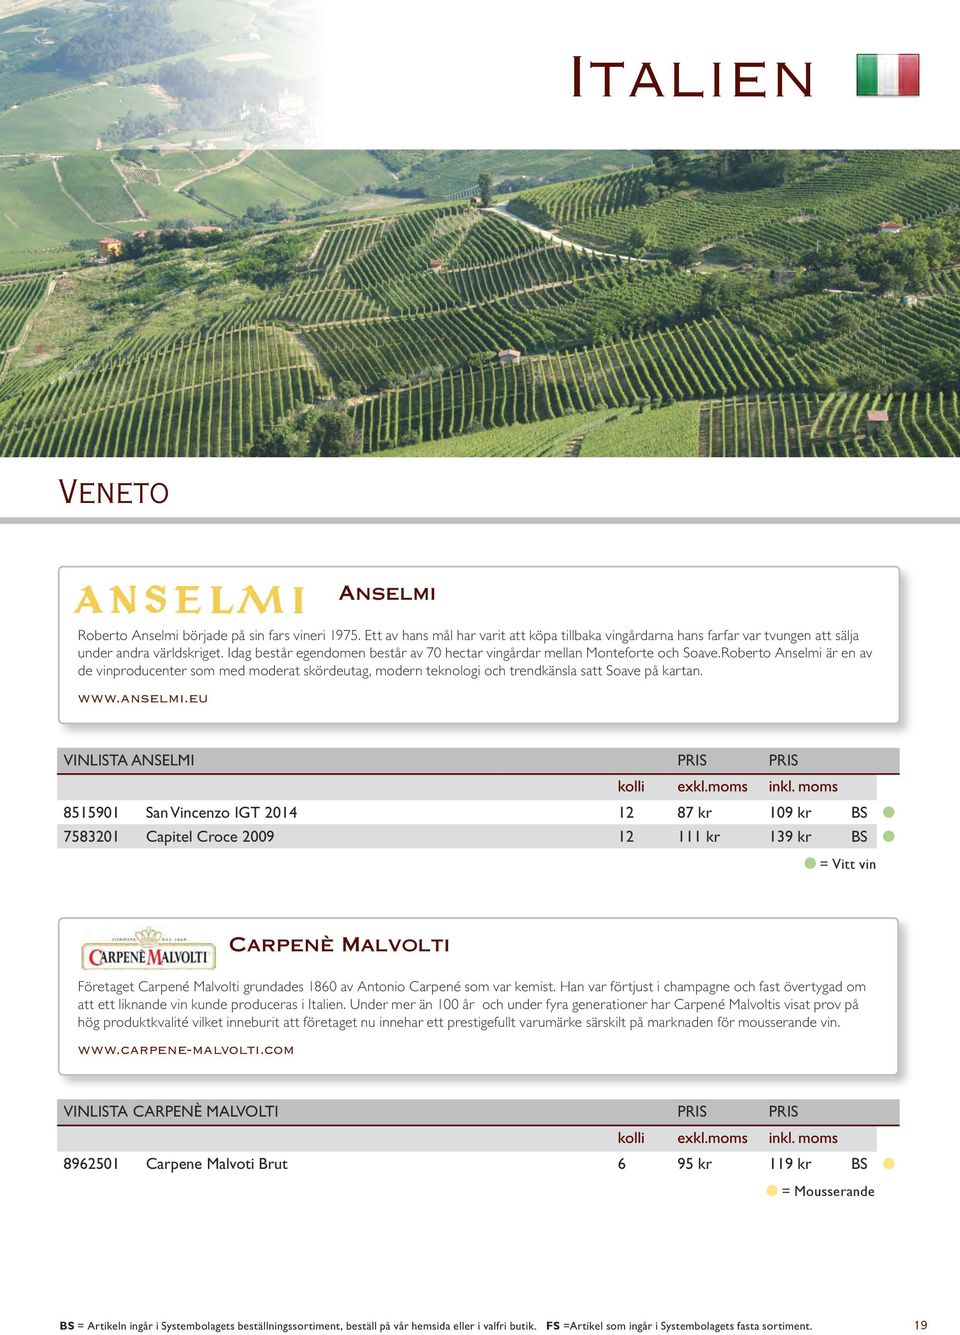 Roberto Anselmi är en av de vinproducenter som med moderat skördeutag, modern teknologi och trendkänsla satt Soave på kartan. www.anselmi.